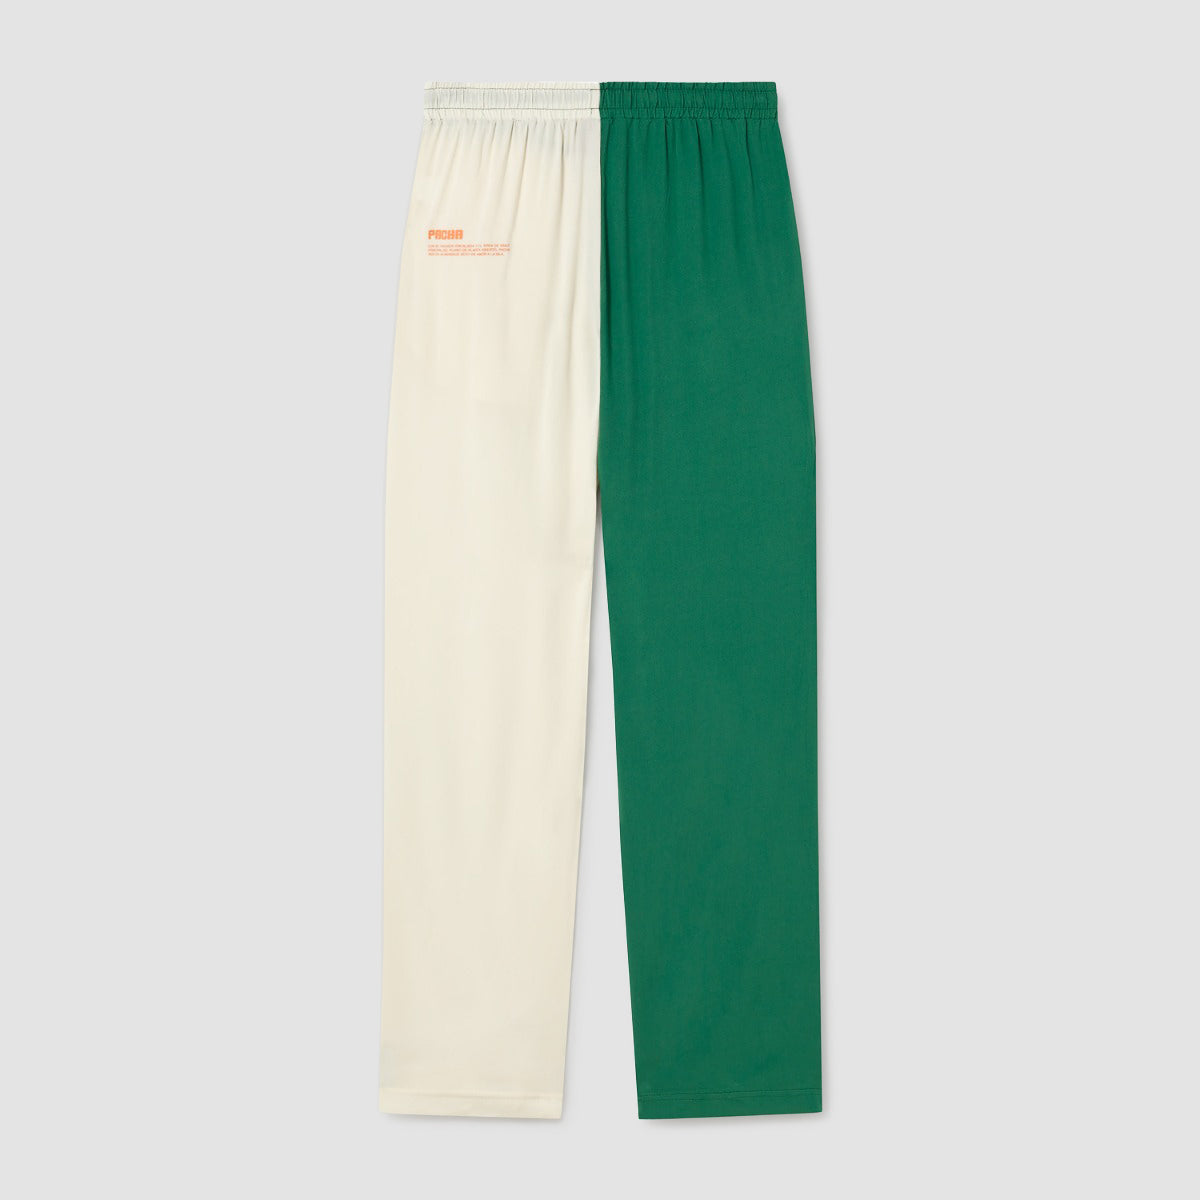 Grün-weiße Hose 1973